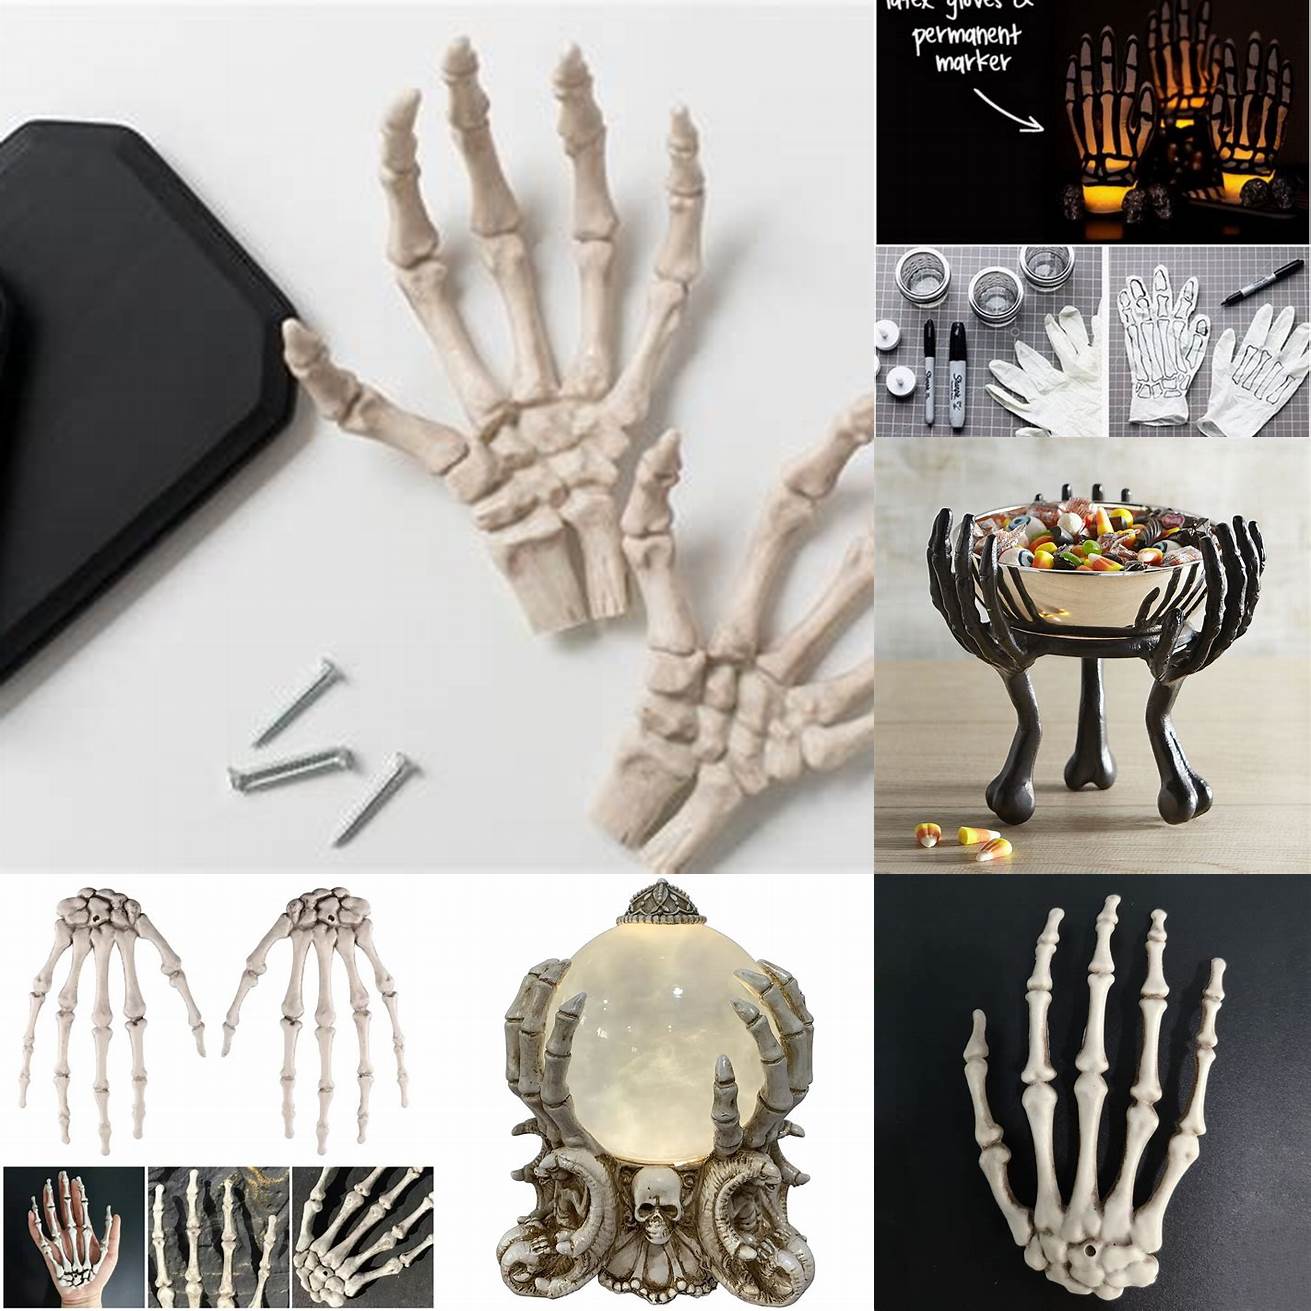 Skeleton hands